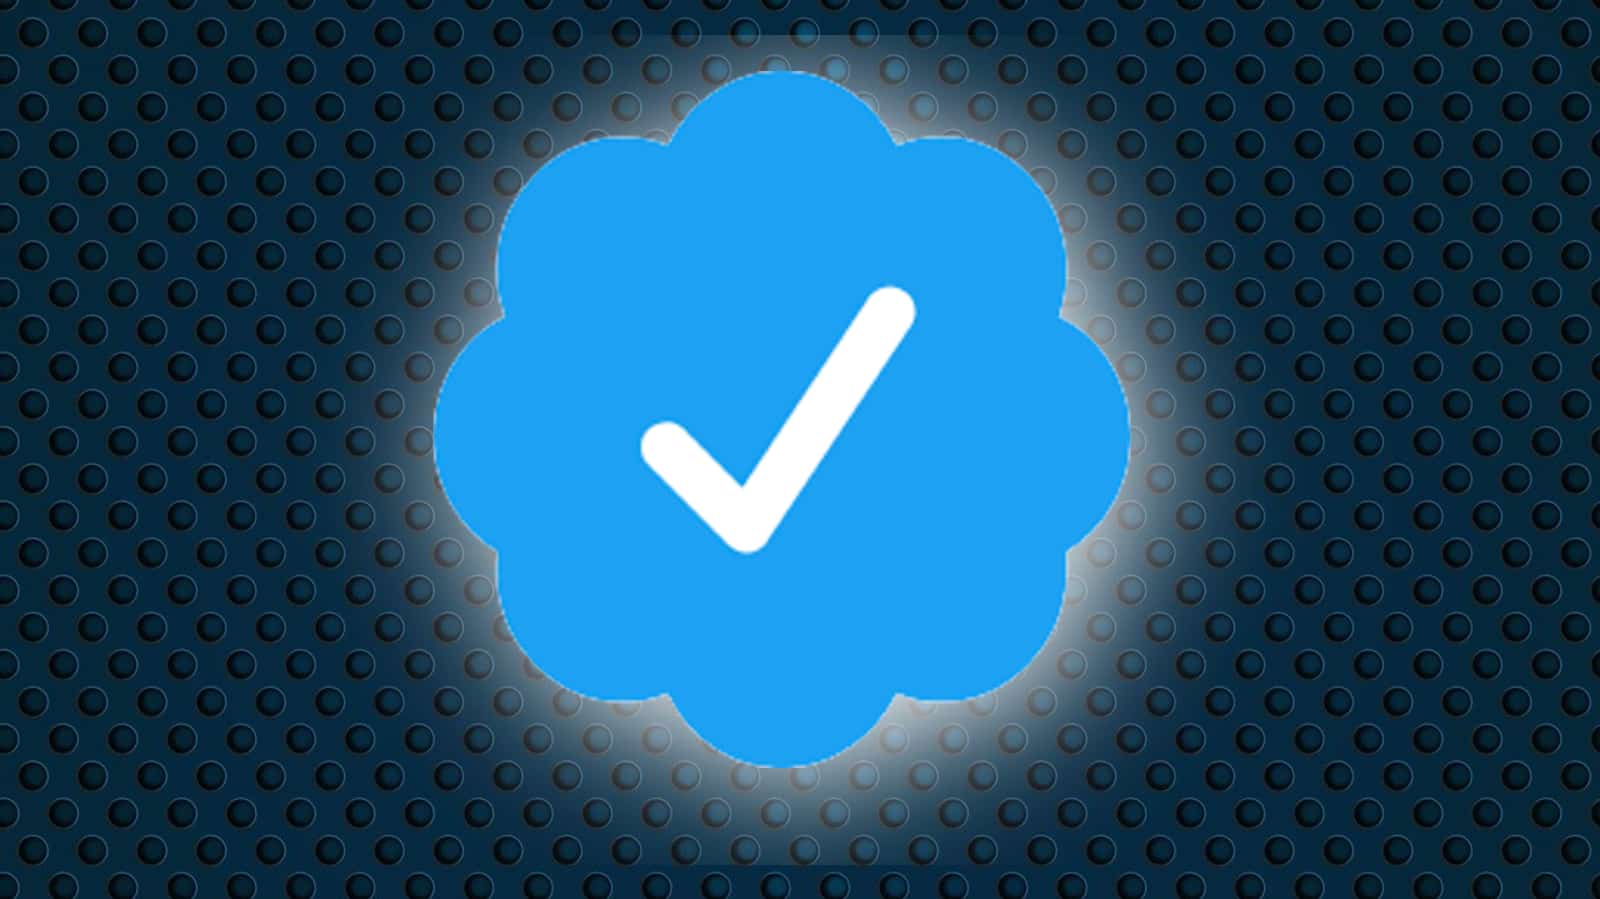 Twitter verification - Wikipedia